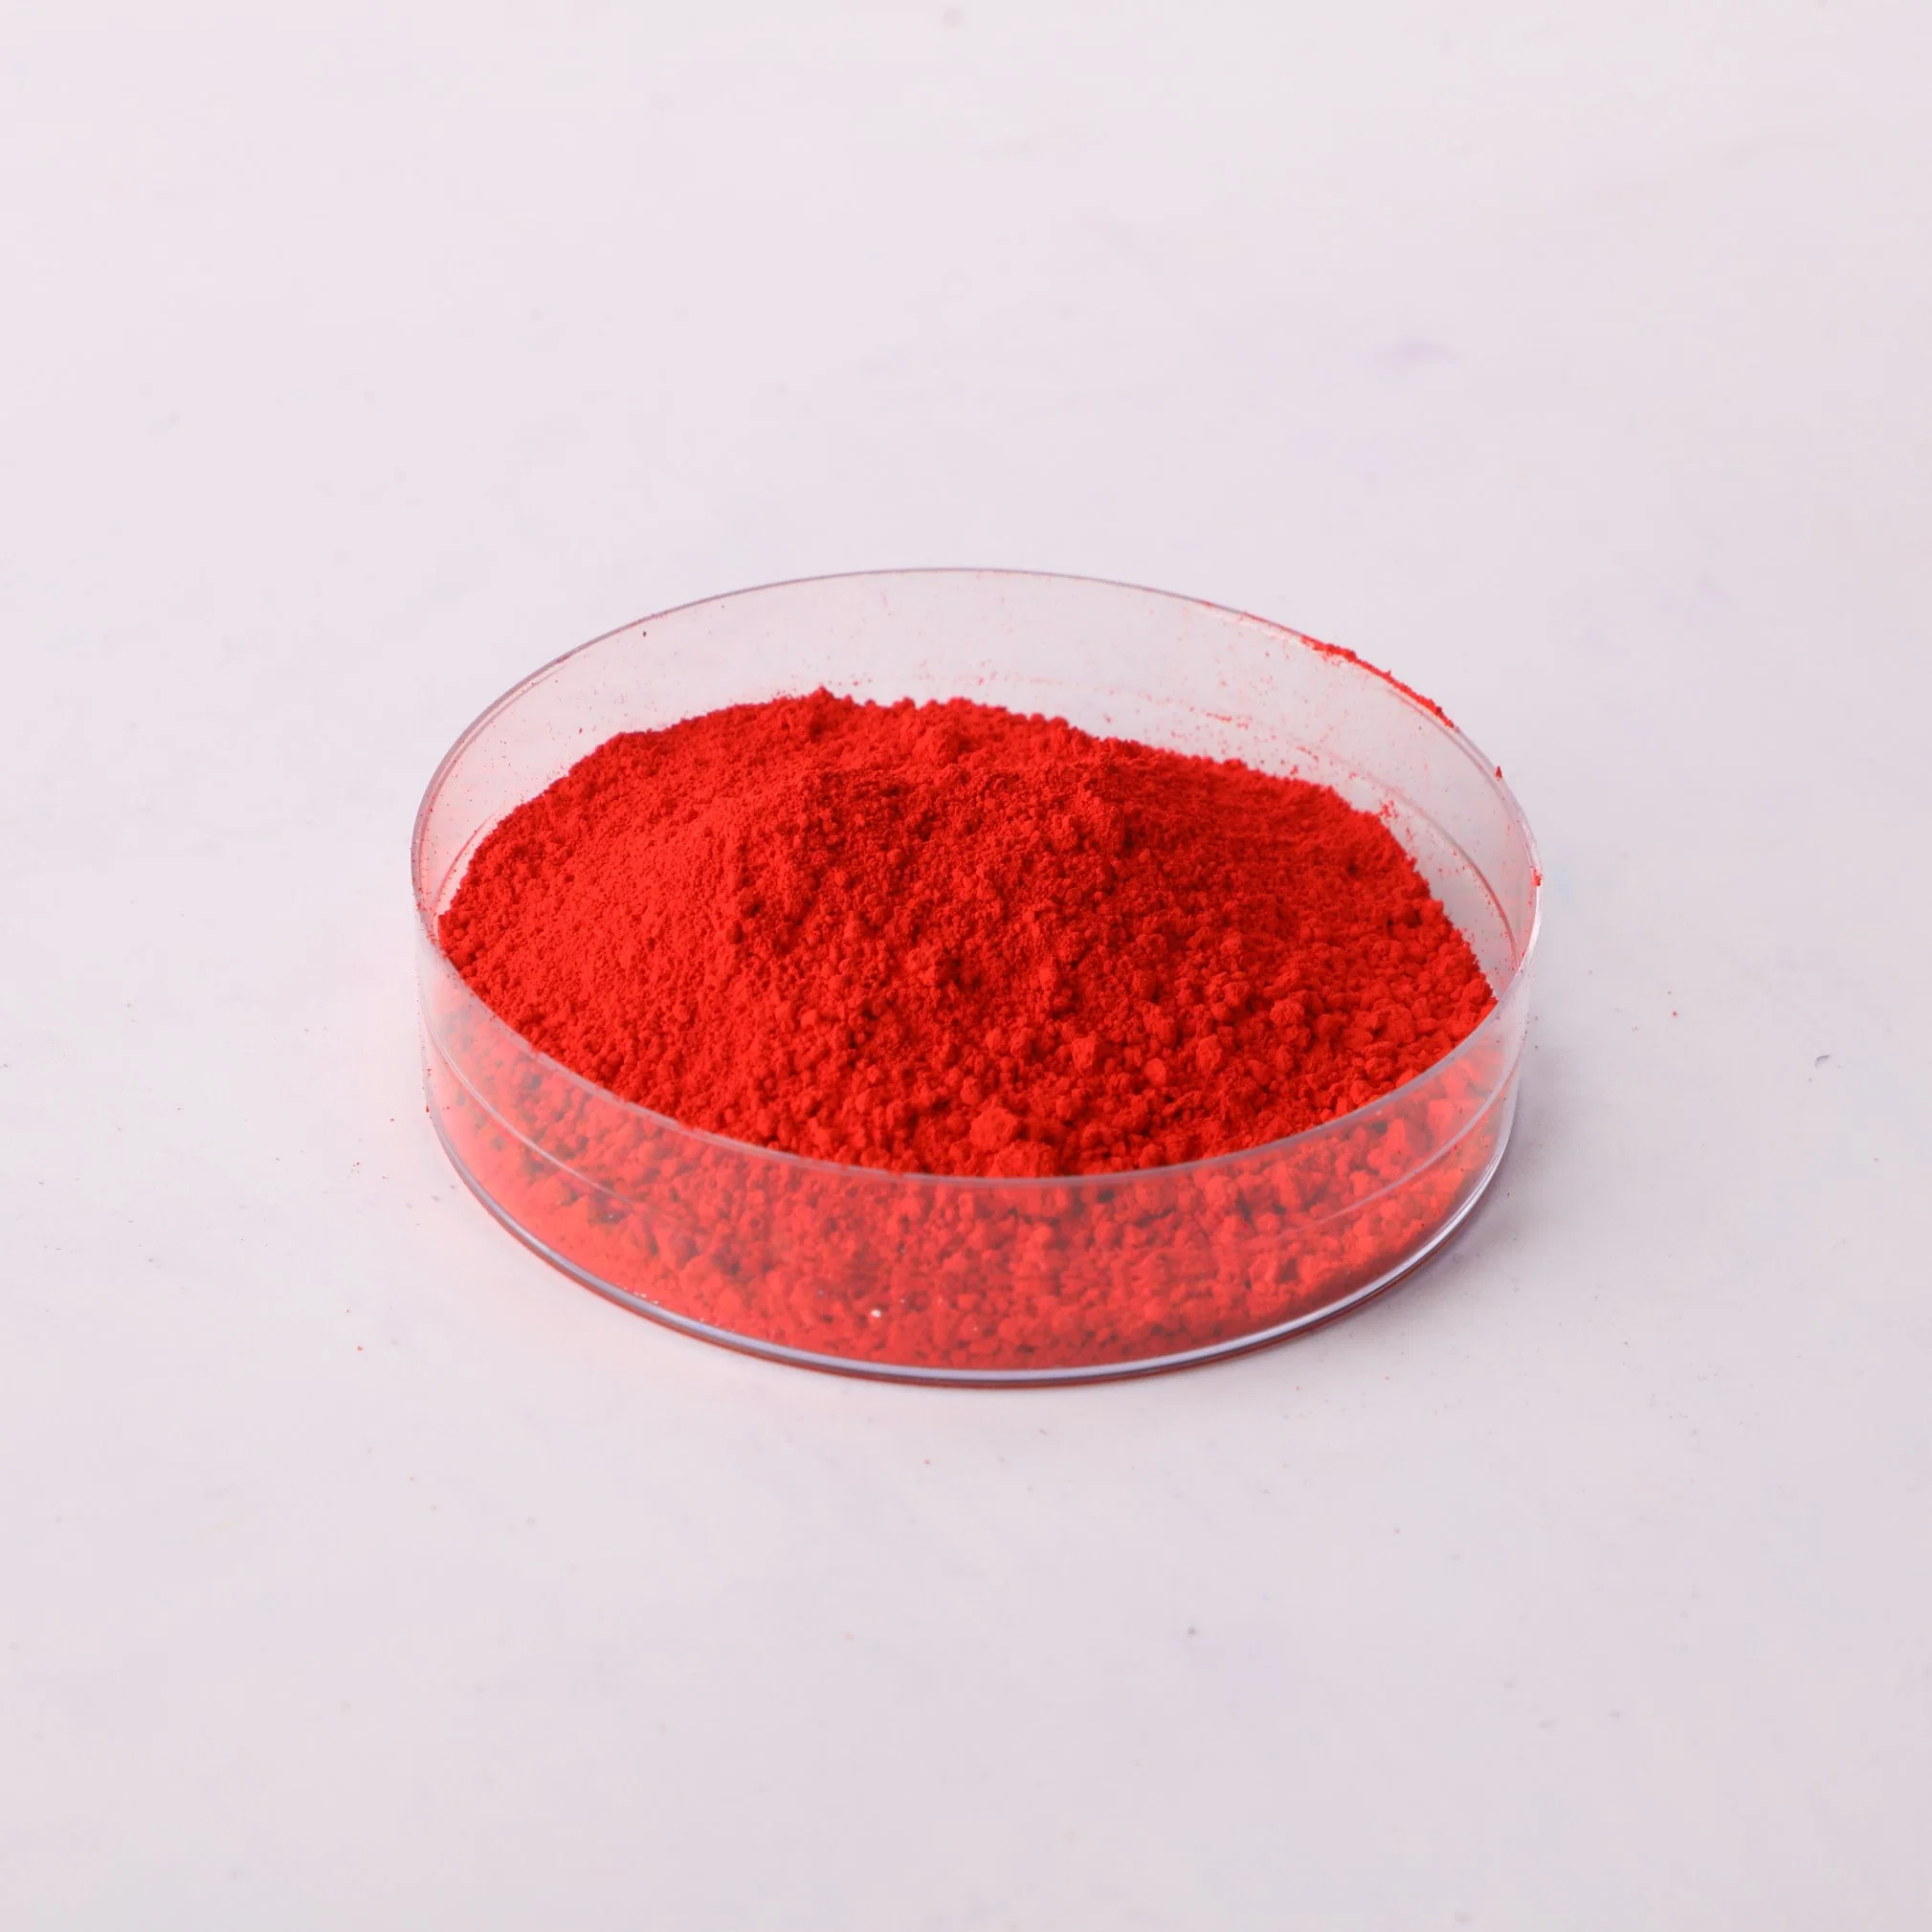 El ácido de alta calidad, el ácido 80 Rojo tinte rojo